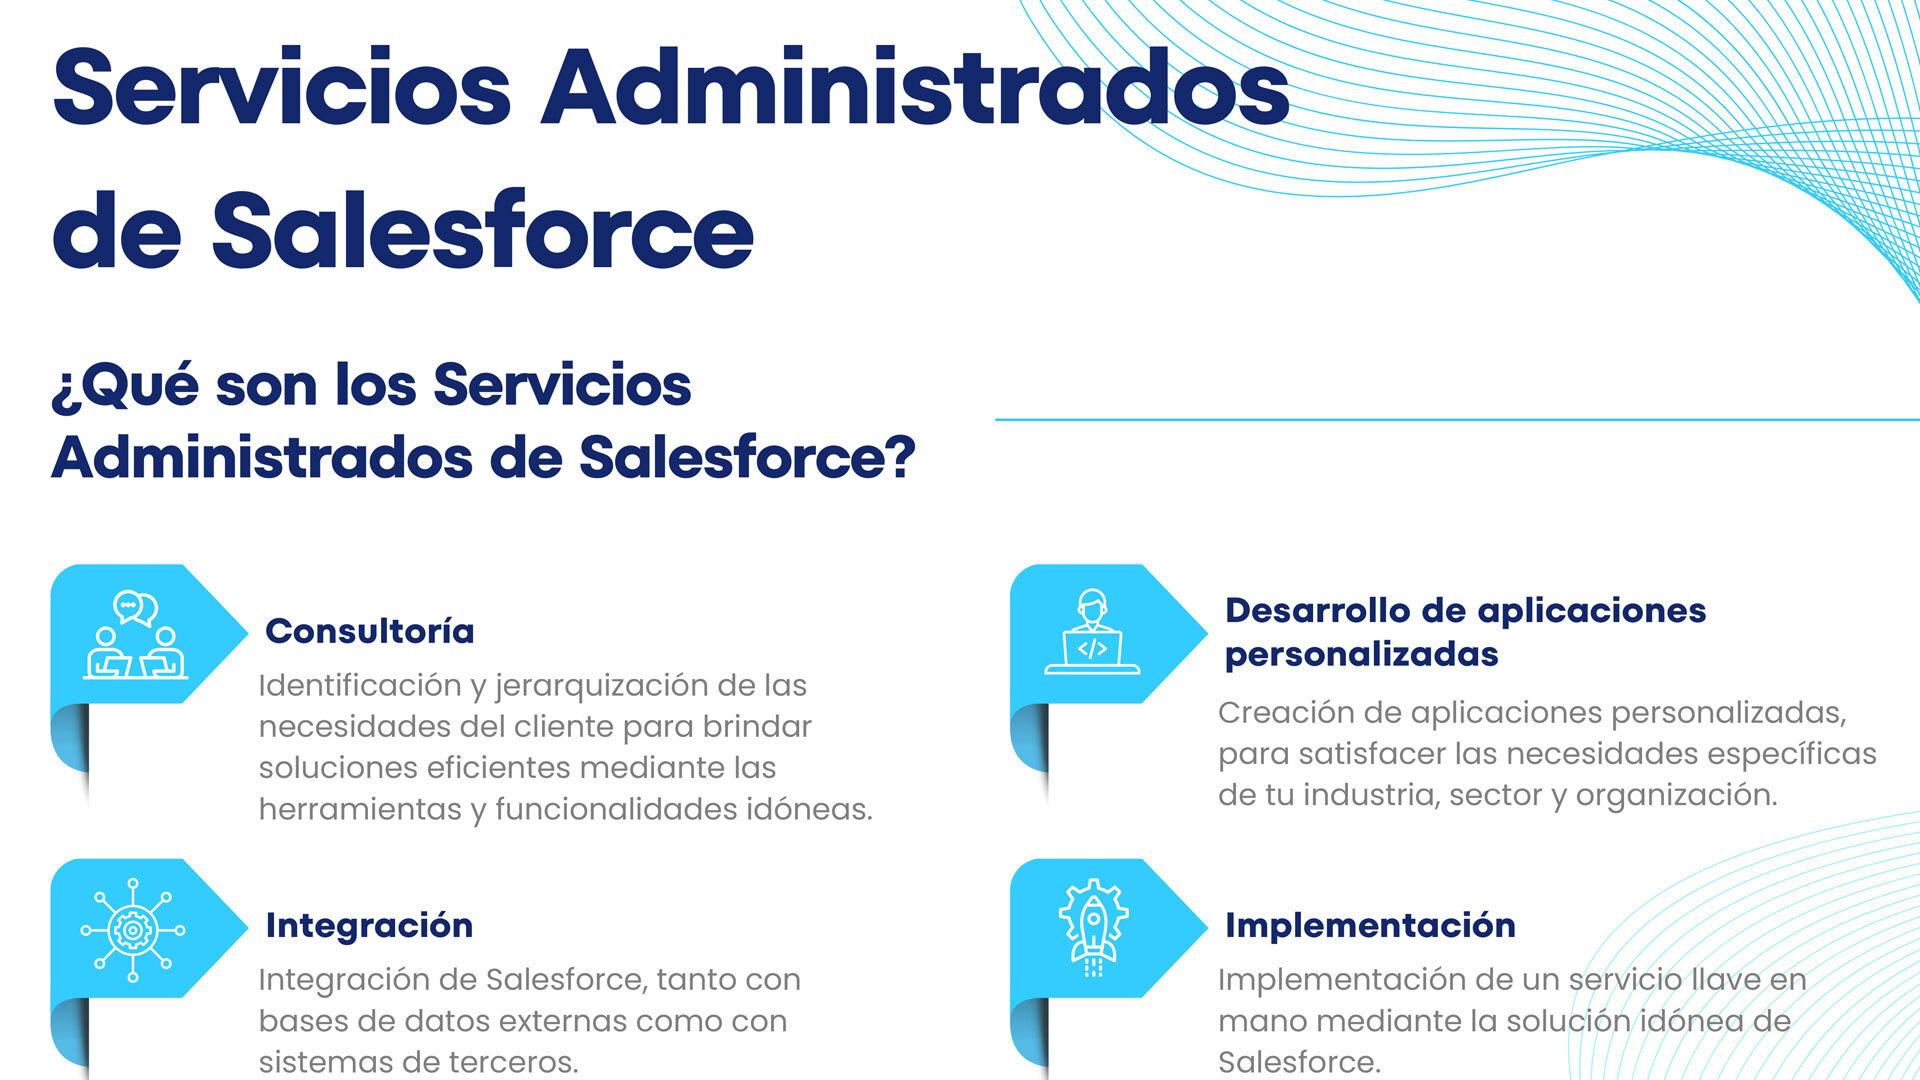 Servicios administrados de Salesforce